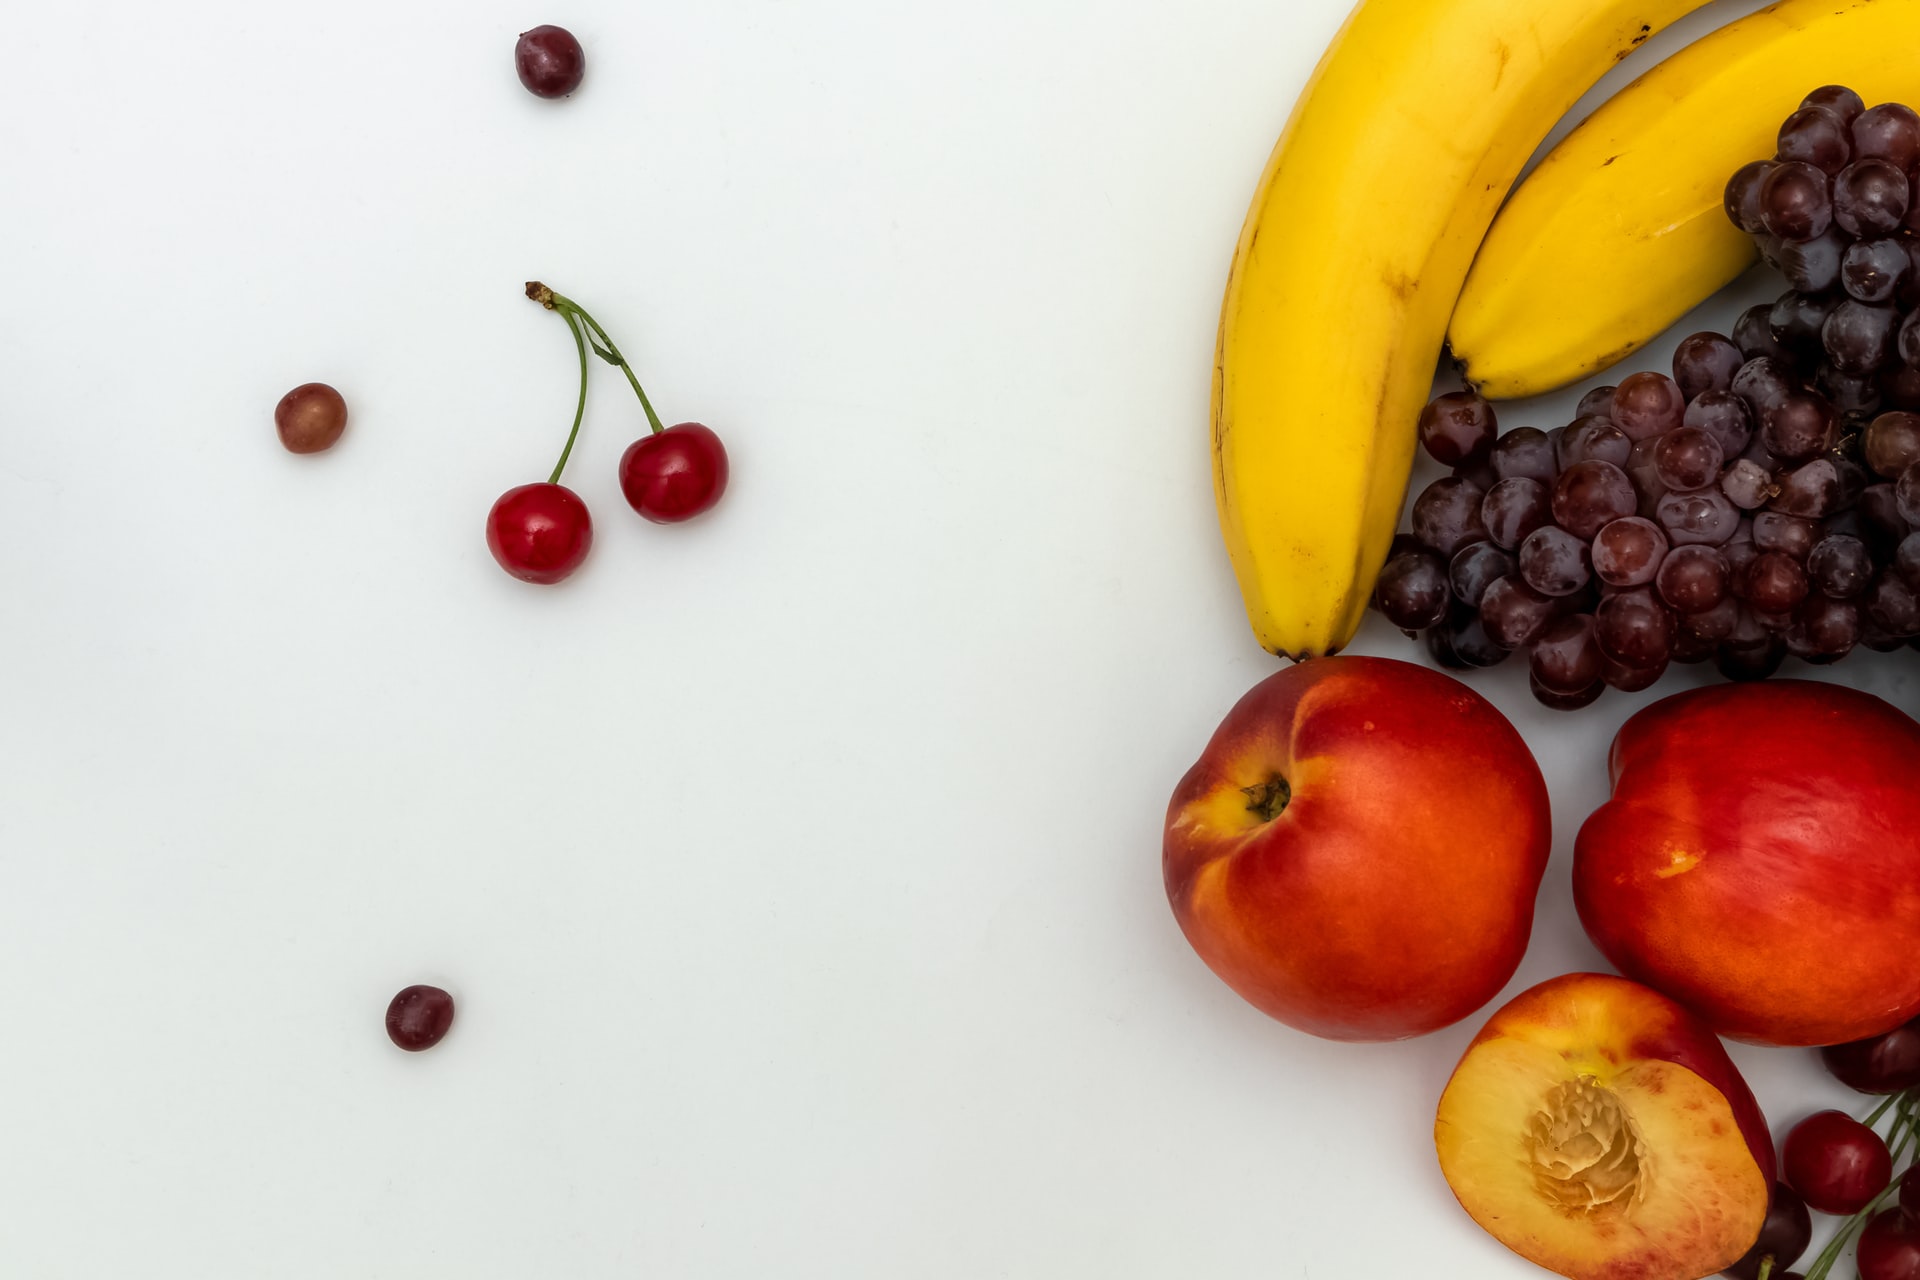 além dos 5 grupos alimentares, as frutas também devem fazer parte da introdução alimentar